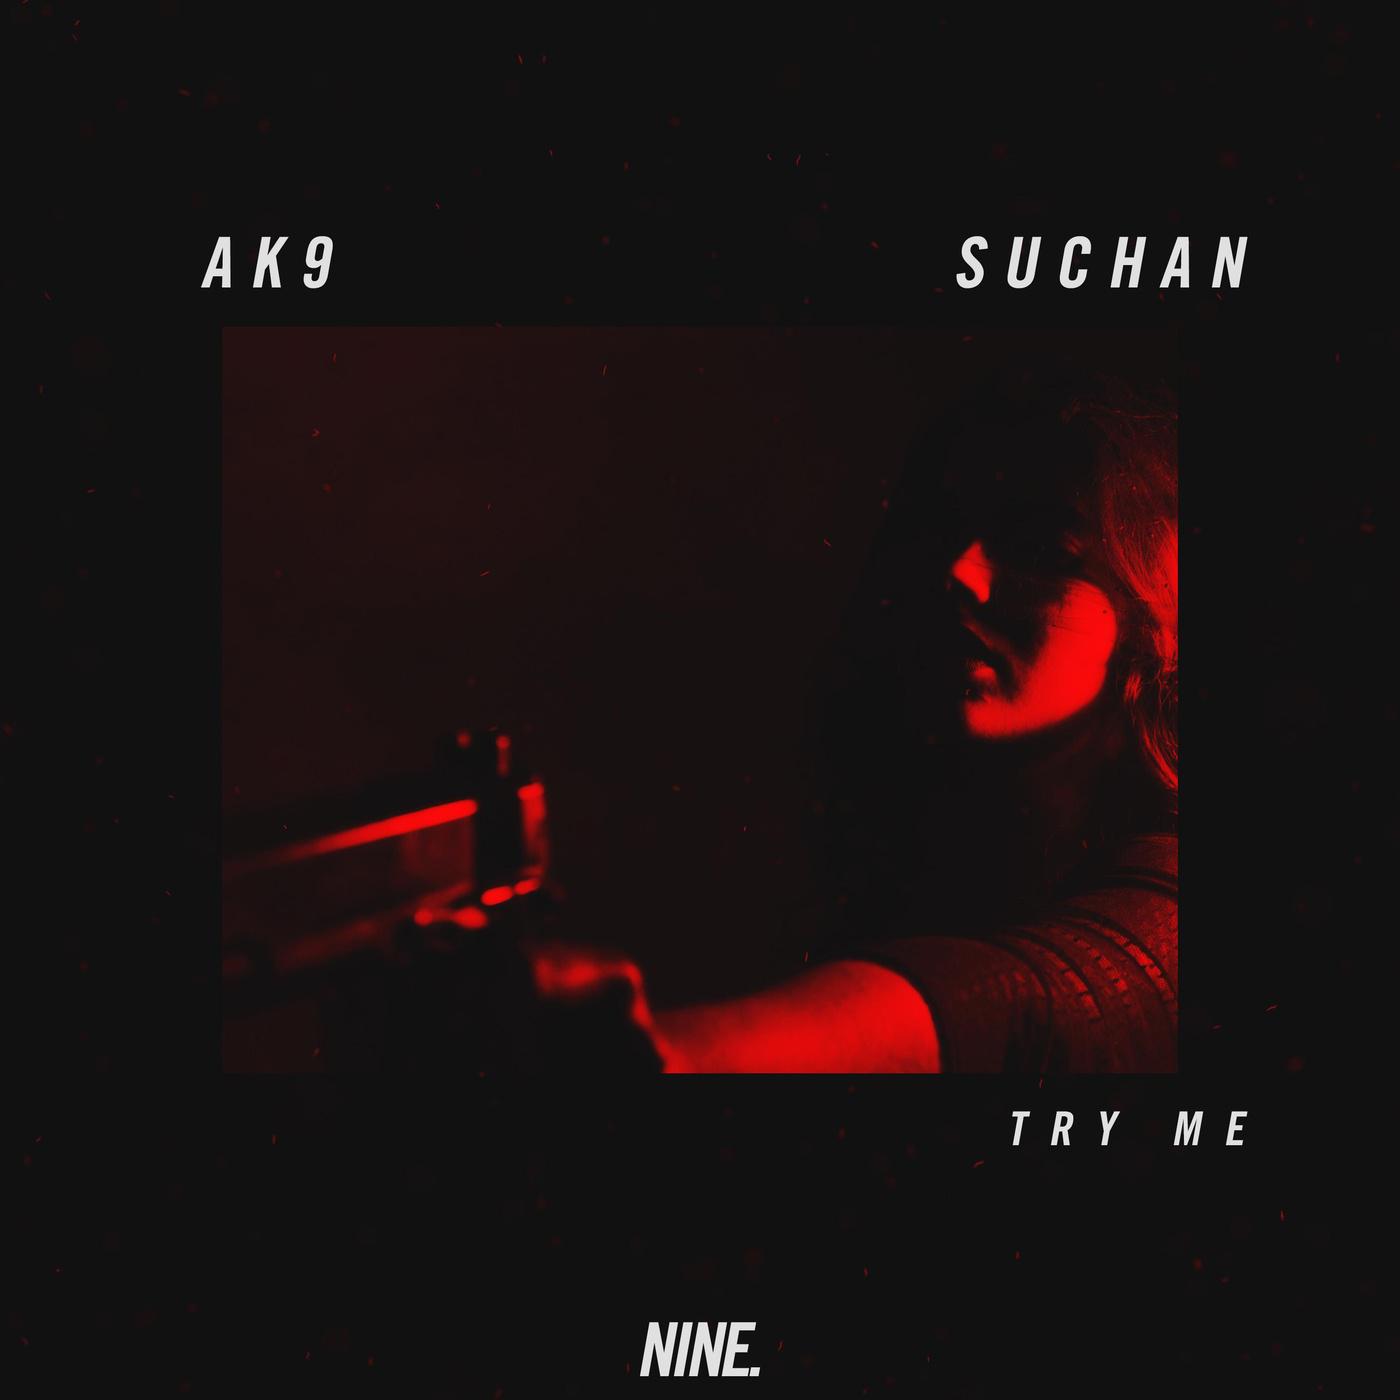 AK9 - Try Me